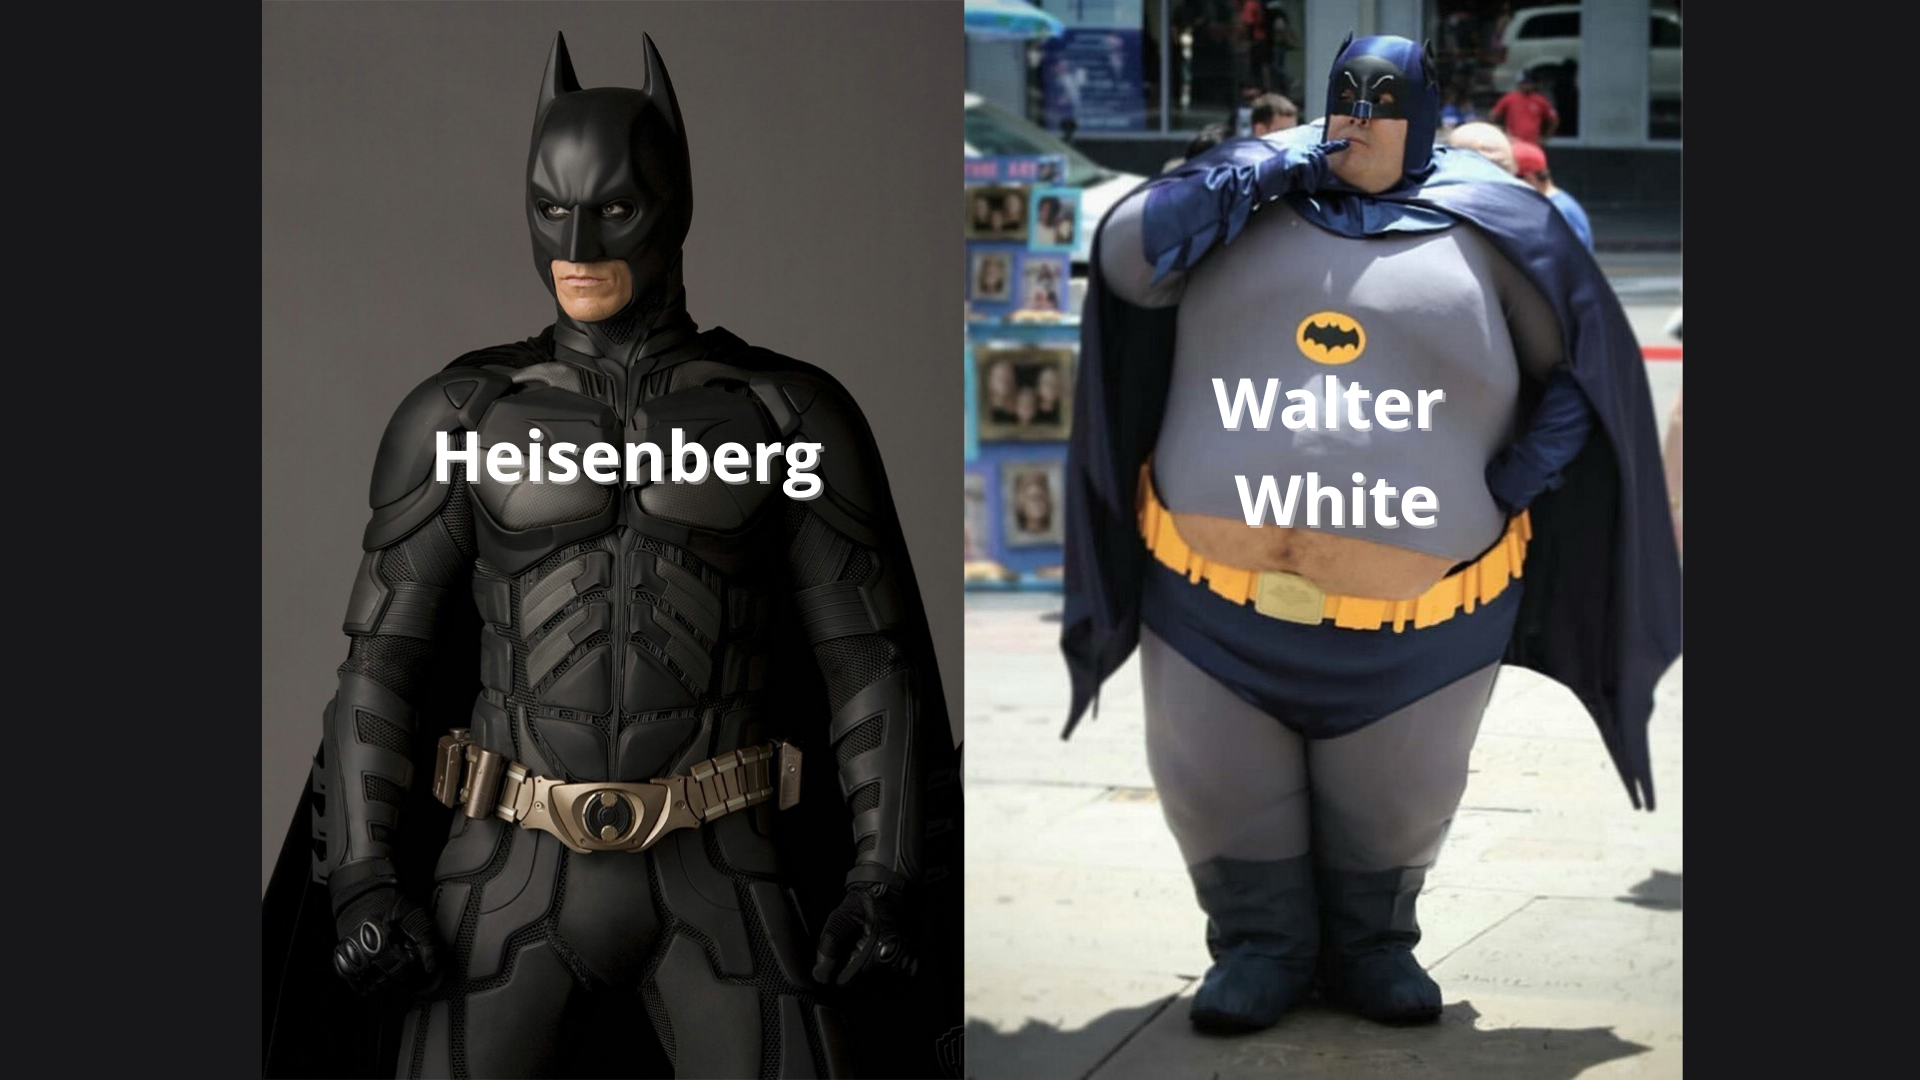 funny memes - dank memes - batman lol - Heisenberg Walter White